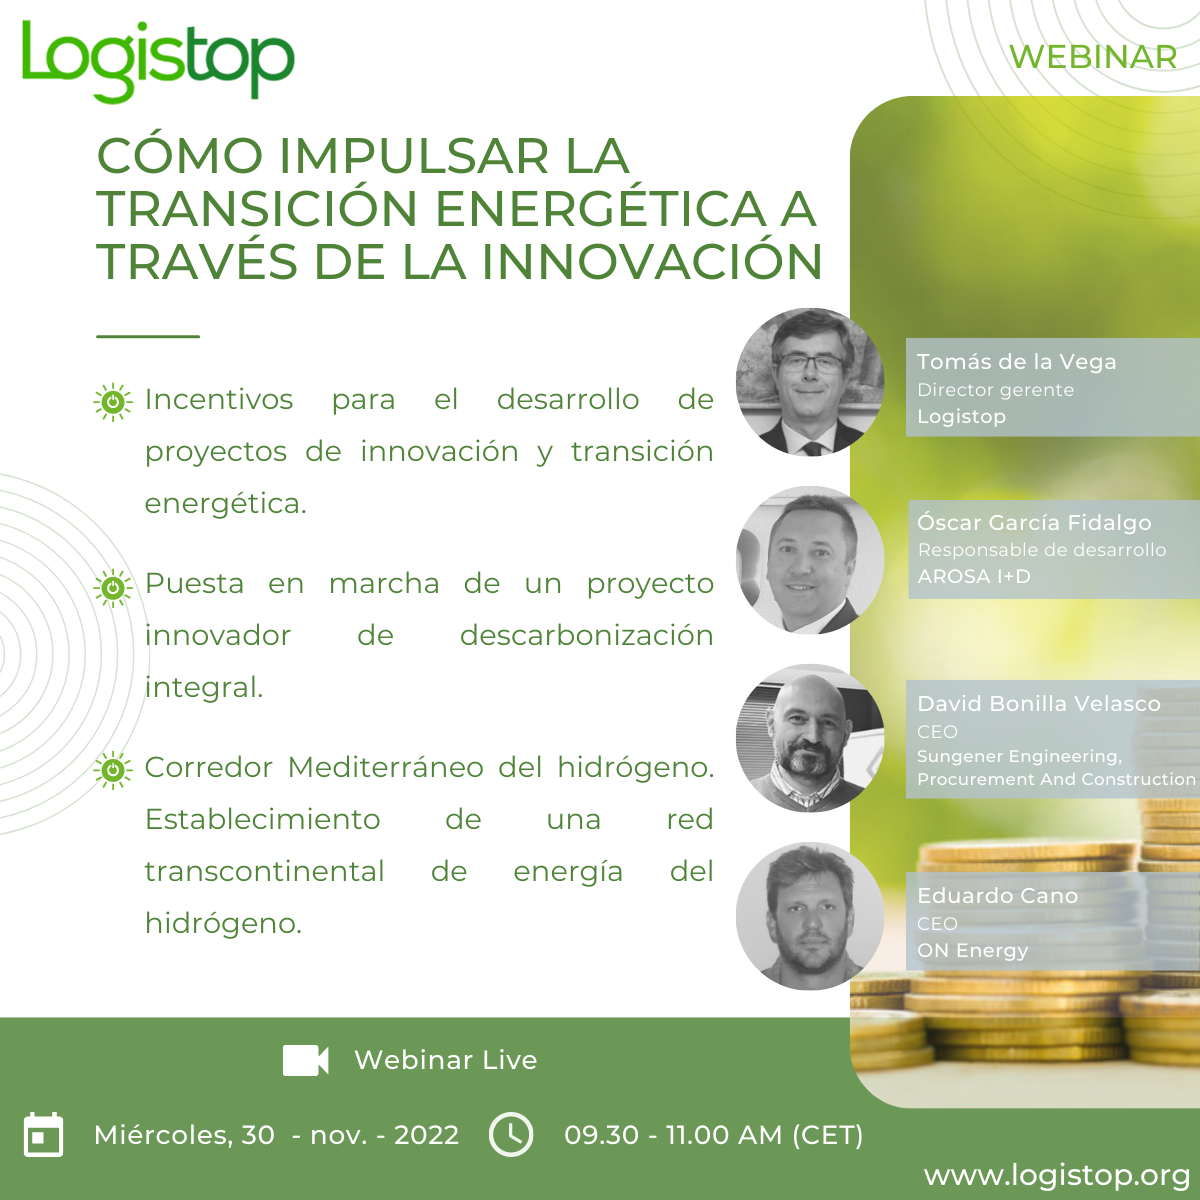 Webinar Logistop Cómo impulsar la transición energética a través de la innovación